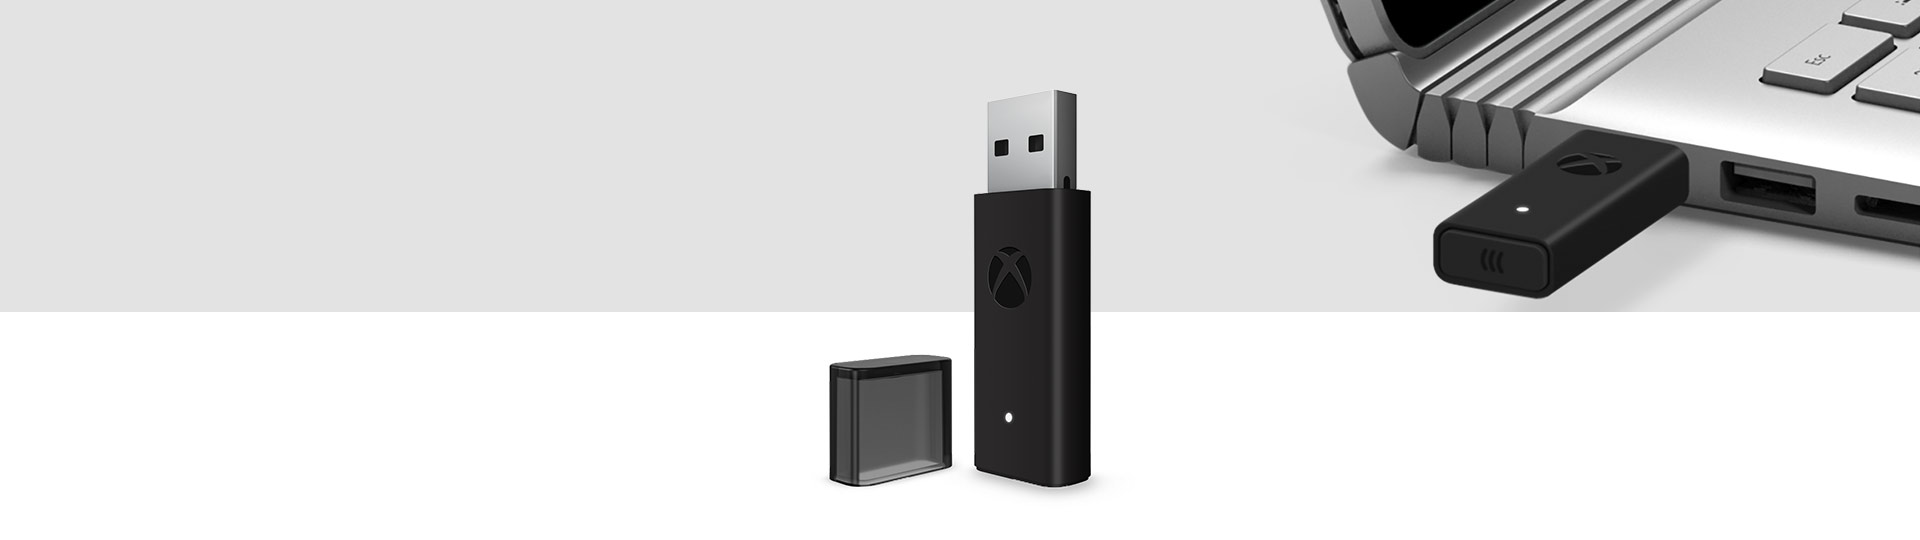 バックグラウンドでラップトップの USB ポートに接続された Xbox ワイヤレス アダプターを搭載した Windows 10 用 Xbox ワイヤレス コントローラー アダプターと Xbox ワイヤレス アダプター